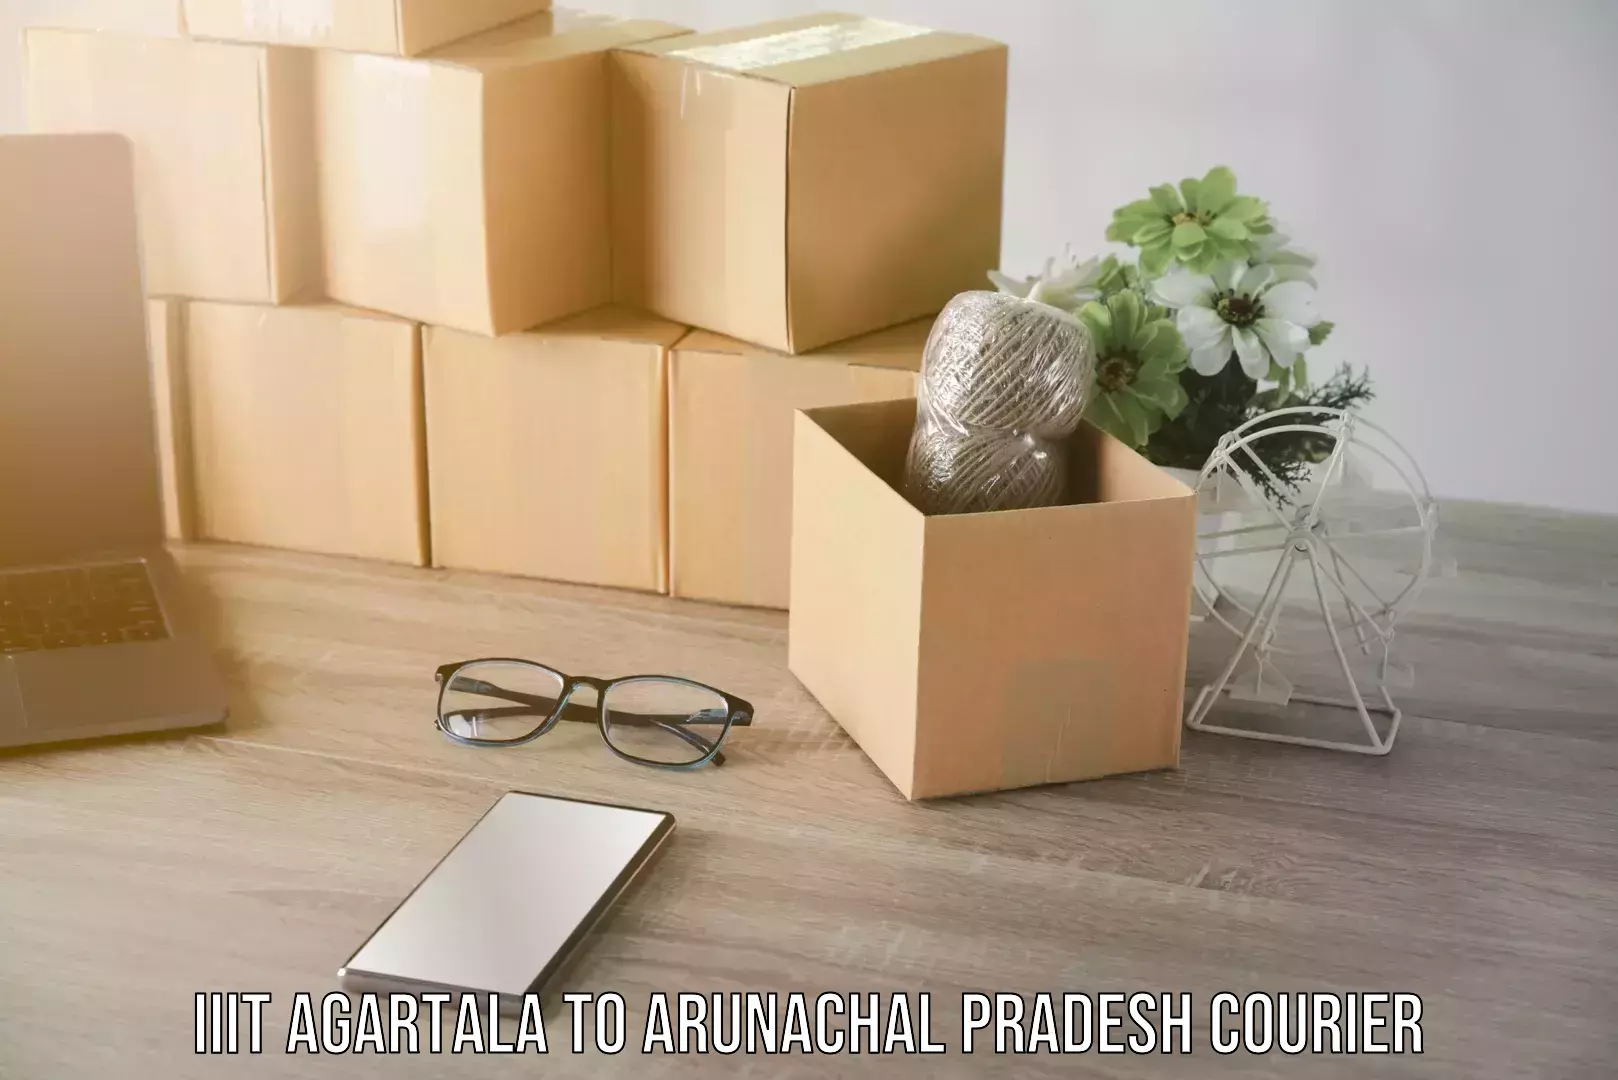 Supply chain delivery IIIT Agartala to Arunachal Pradesh